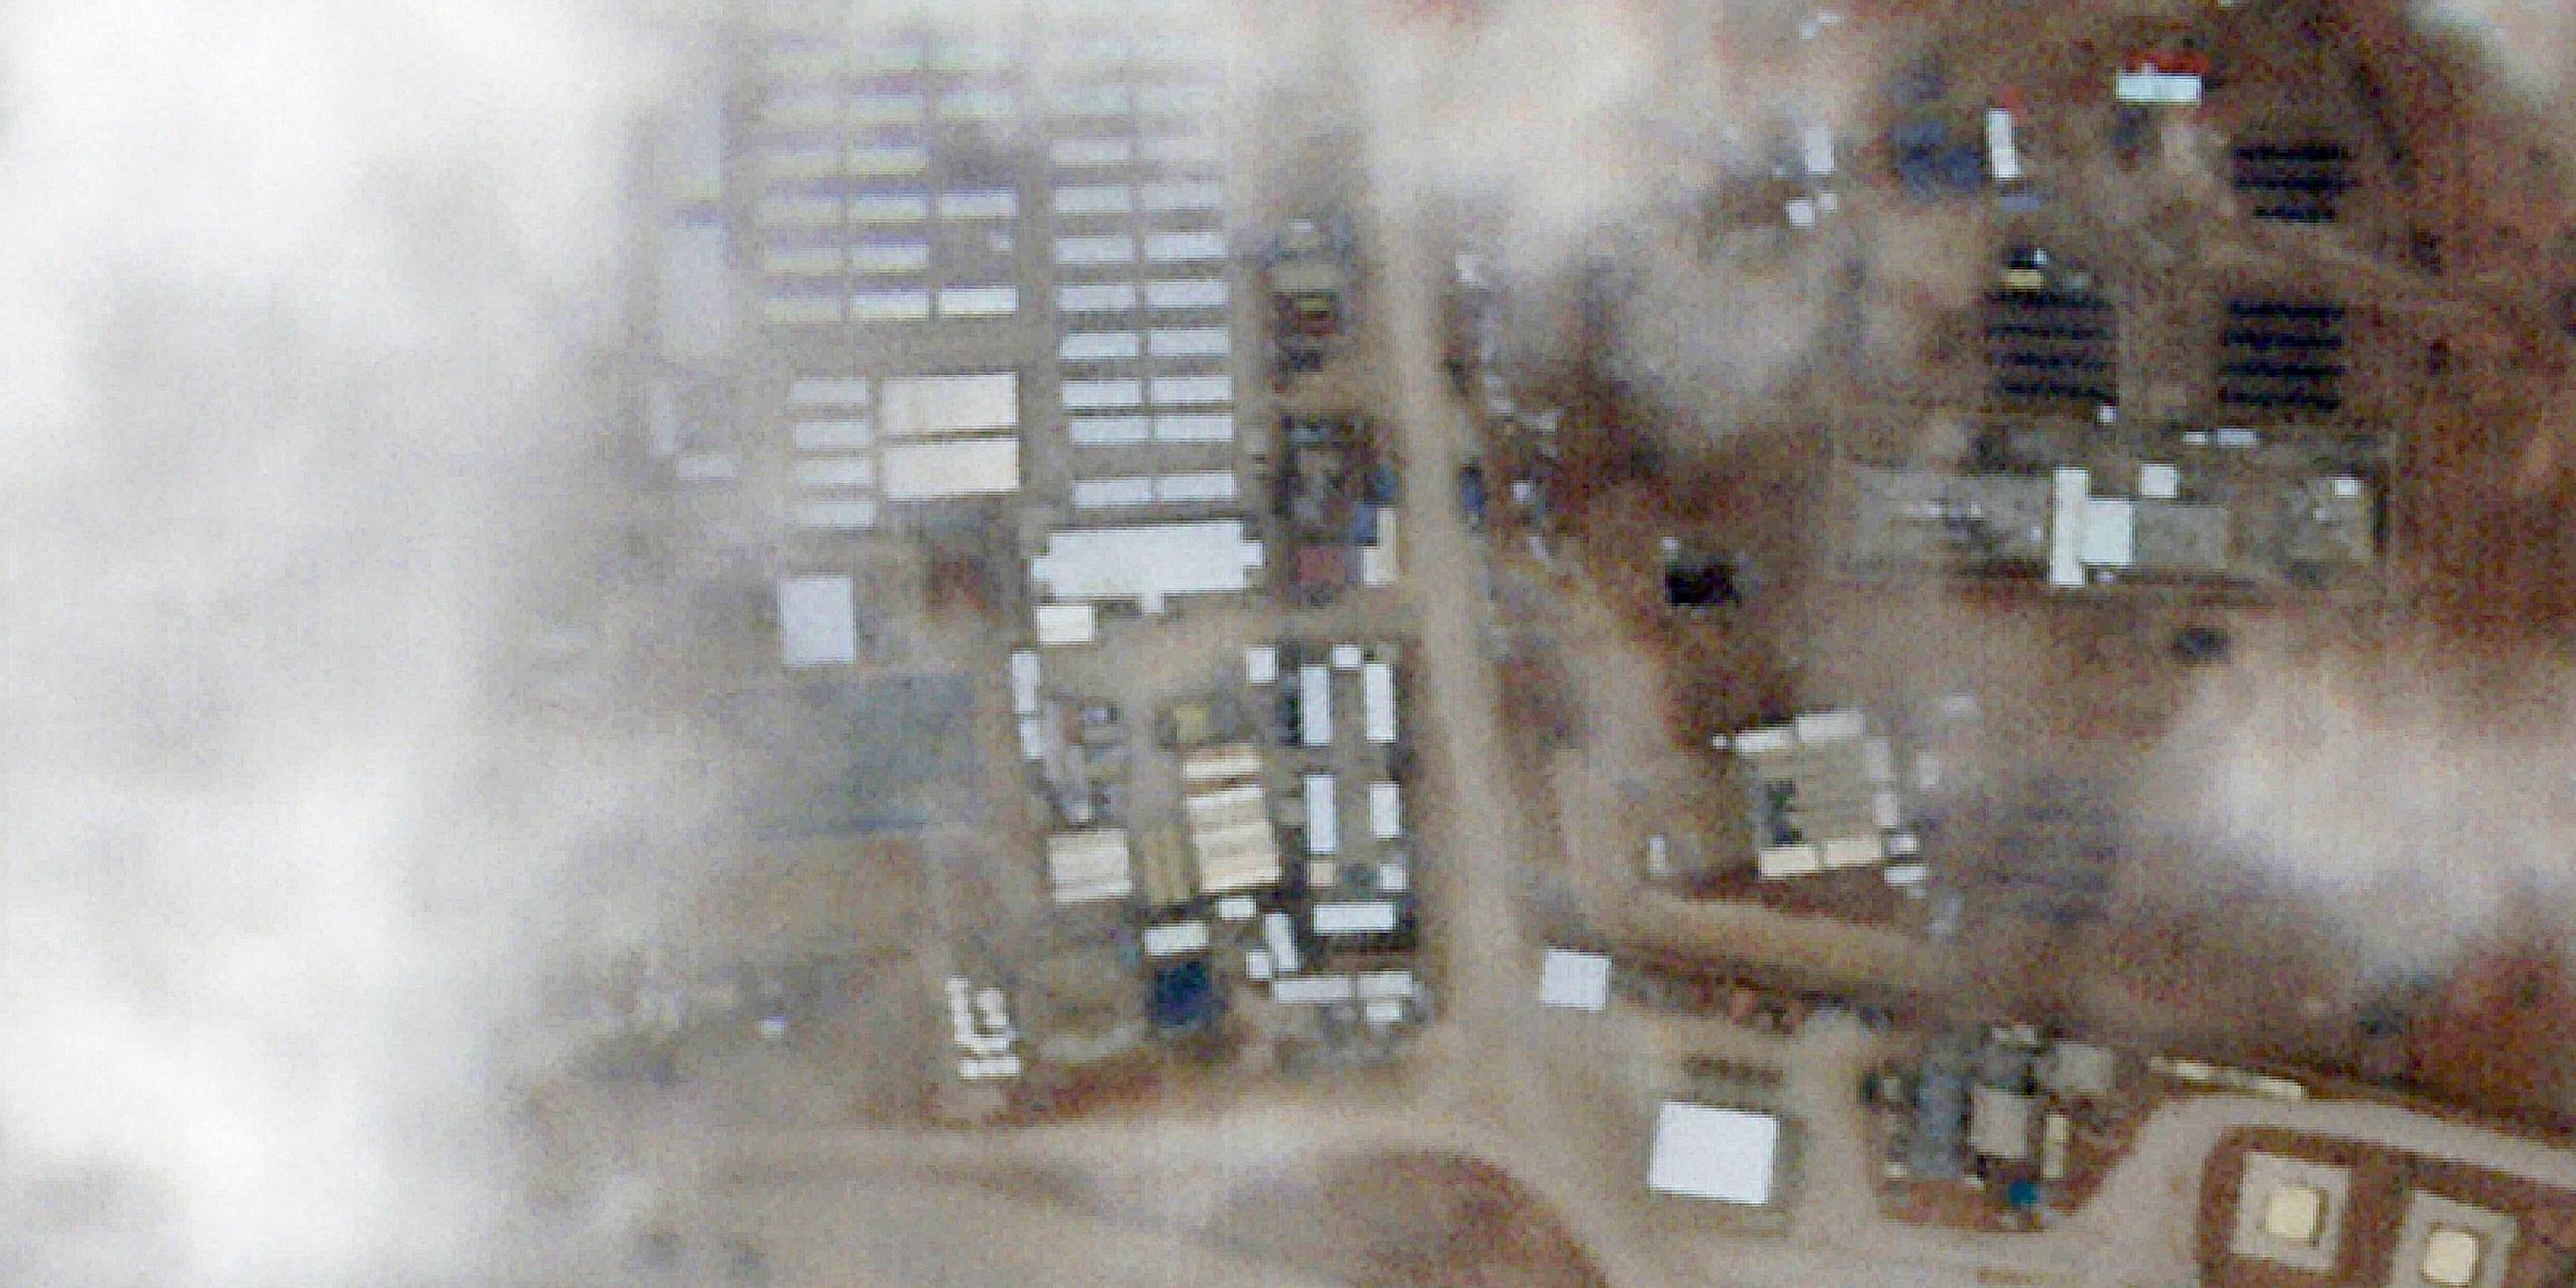 Das Satellitenfoto zeigt den Militärstützpunkt Tower 22 mit Schäden durch einen Drohnenangriff